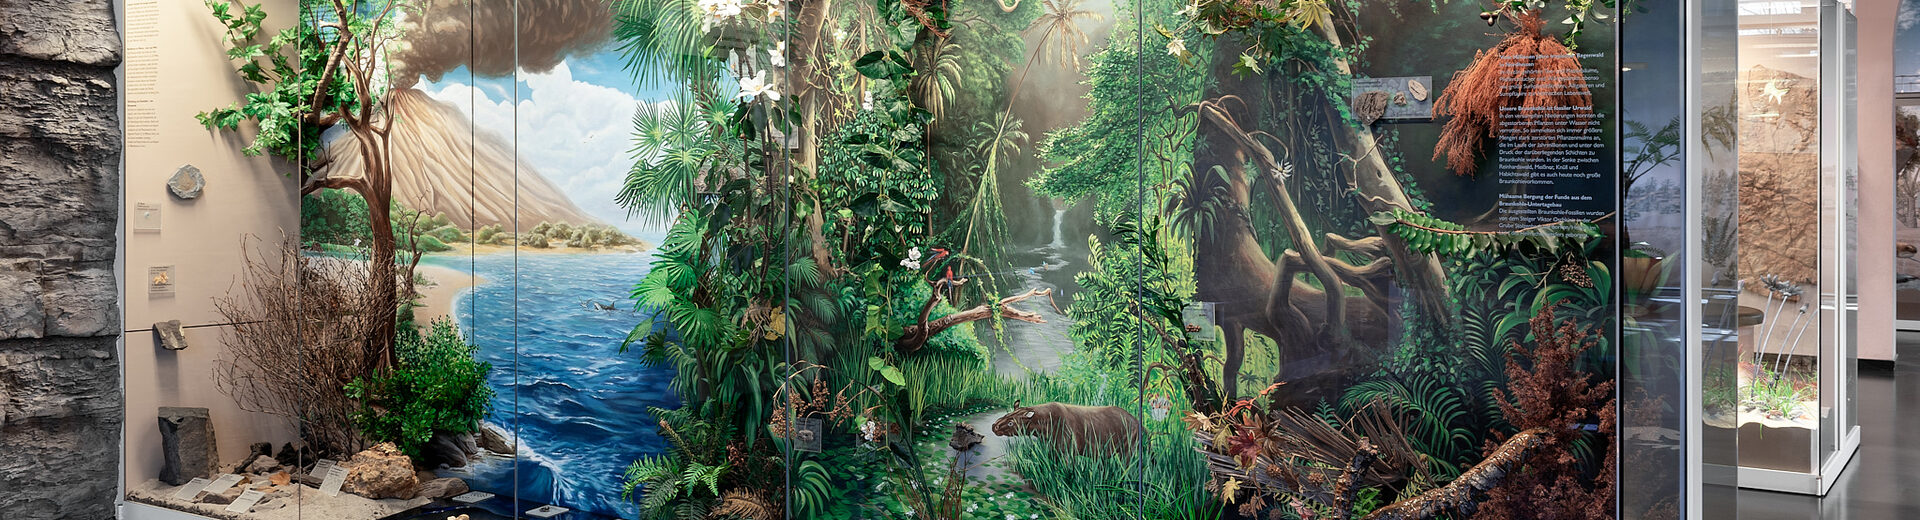 In der Vitrine zum Eozän ist ein urzeitlicher Dschungel mit vielen Pflanzen inszeniert.